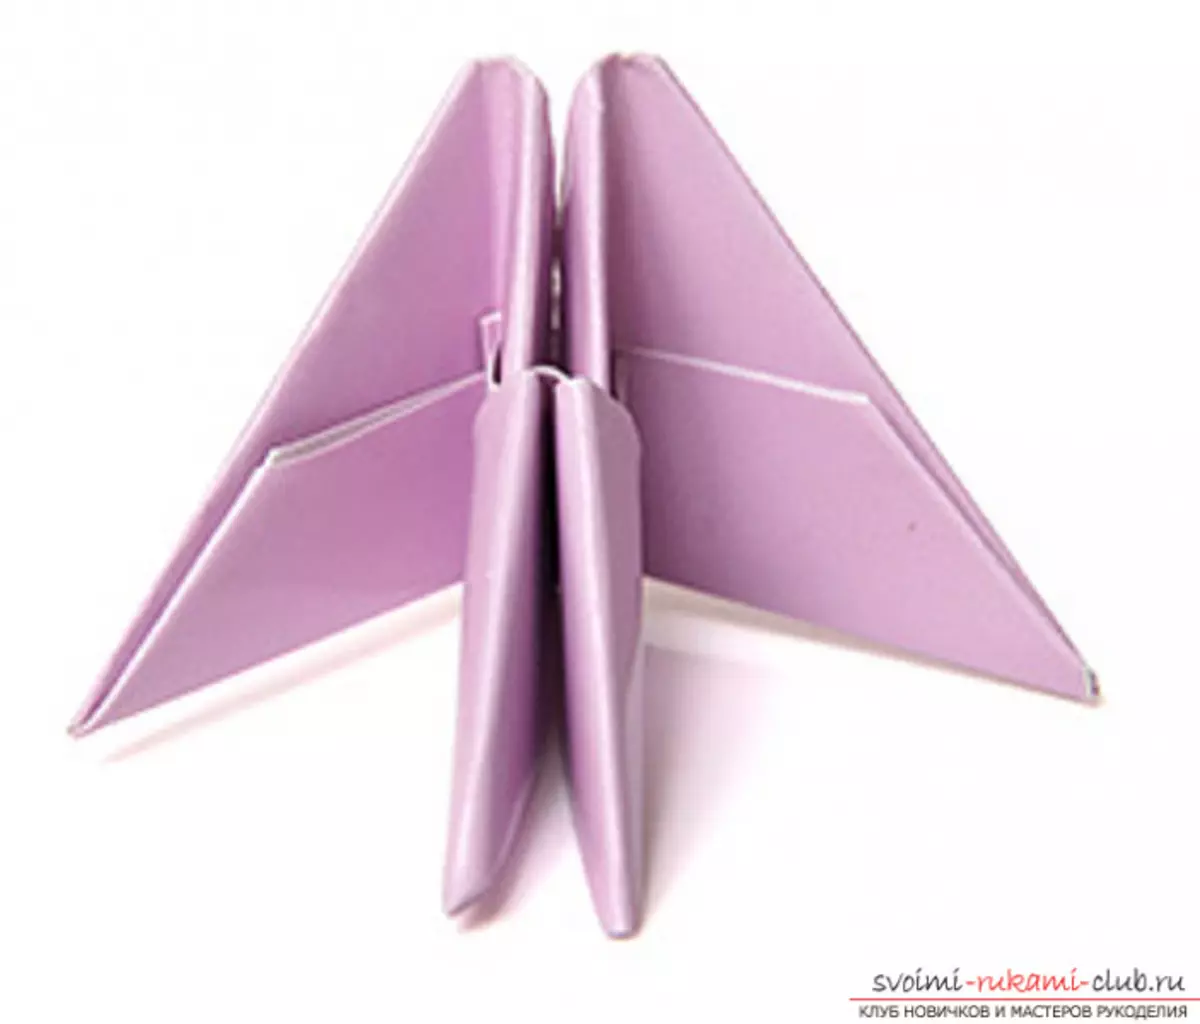 Lebed Origami paperetik: nola egin urratsez urrats argazkiak eta bideoa